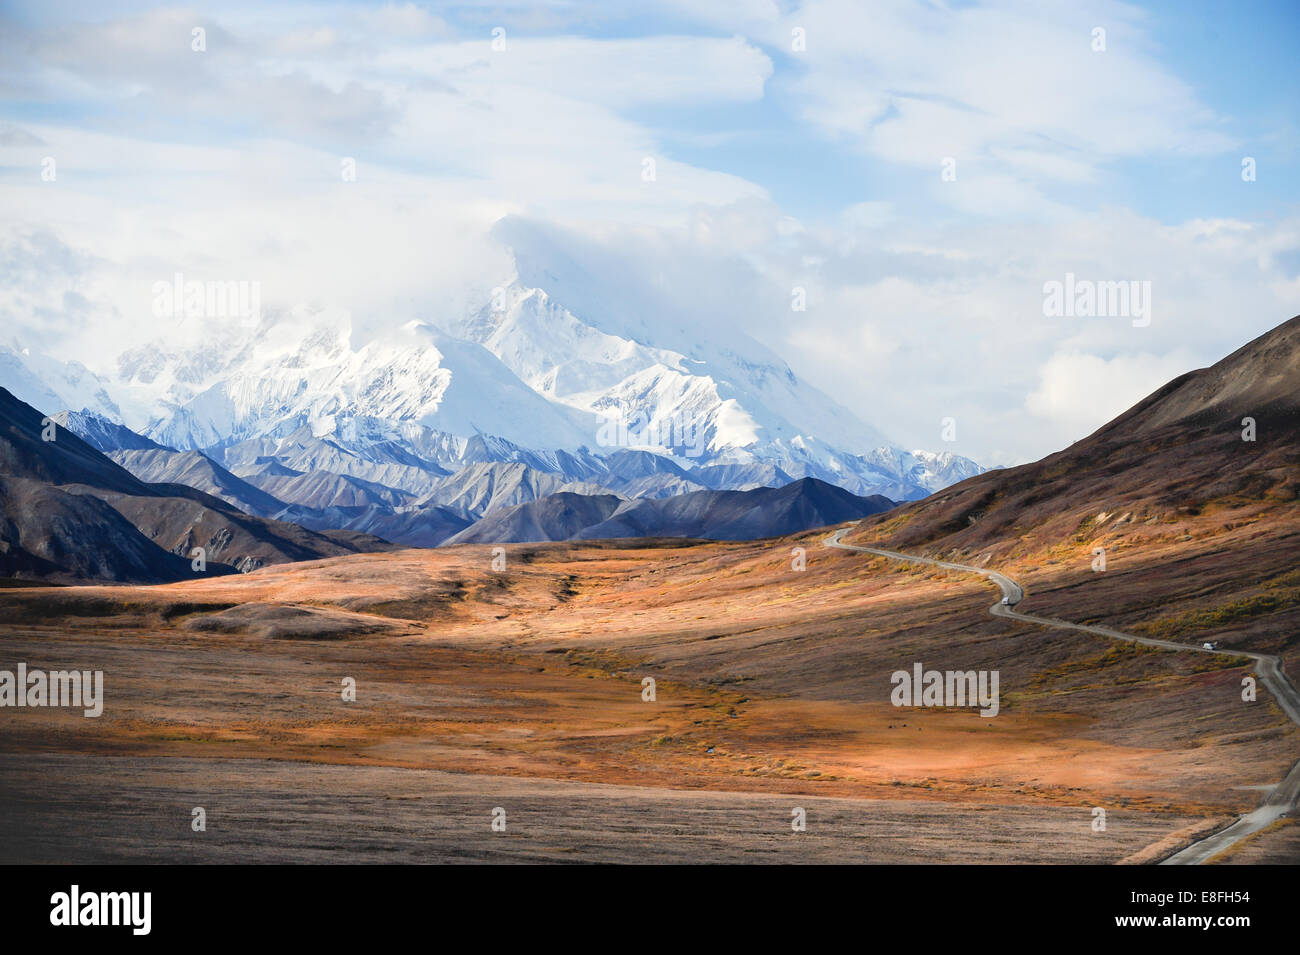 USA, Alaska, Denali National Park, le mont McKinley's pic enneigé Banque D'Images